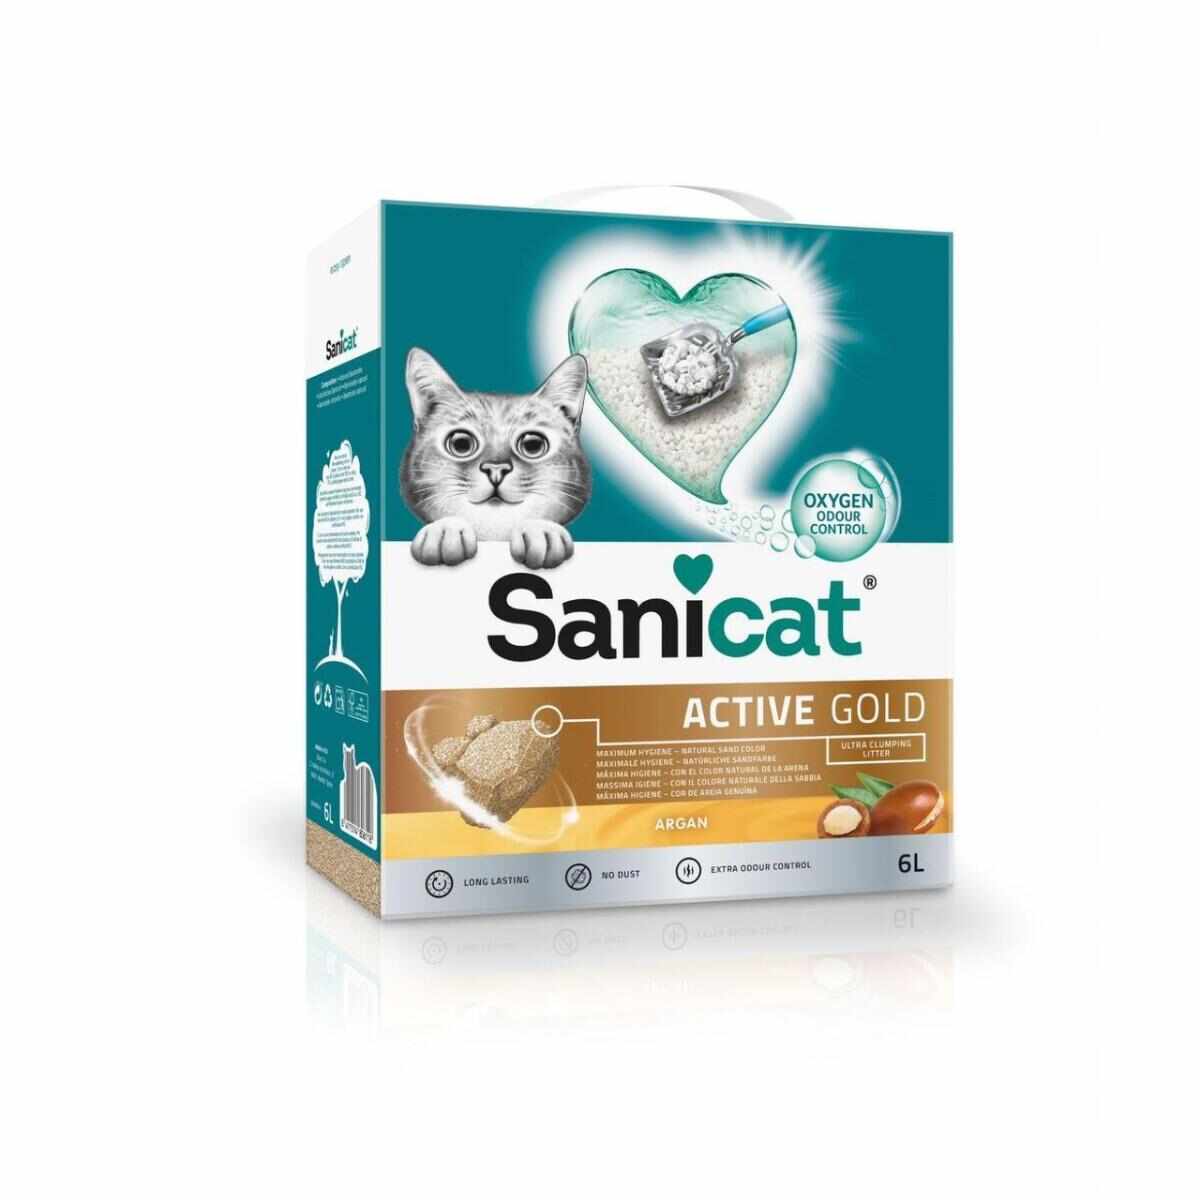 SANICAT Active Gold, Argan, așternut igienic pisici, granule, bentonită, aglomerant, neutralizare mirosuri, 6l